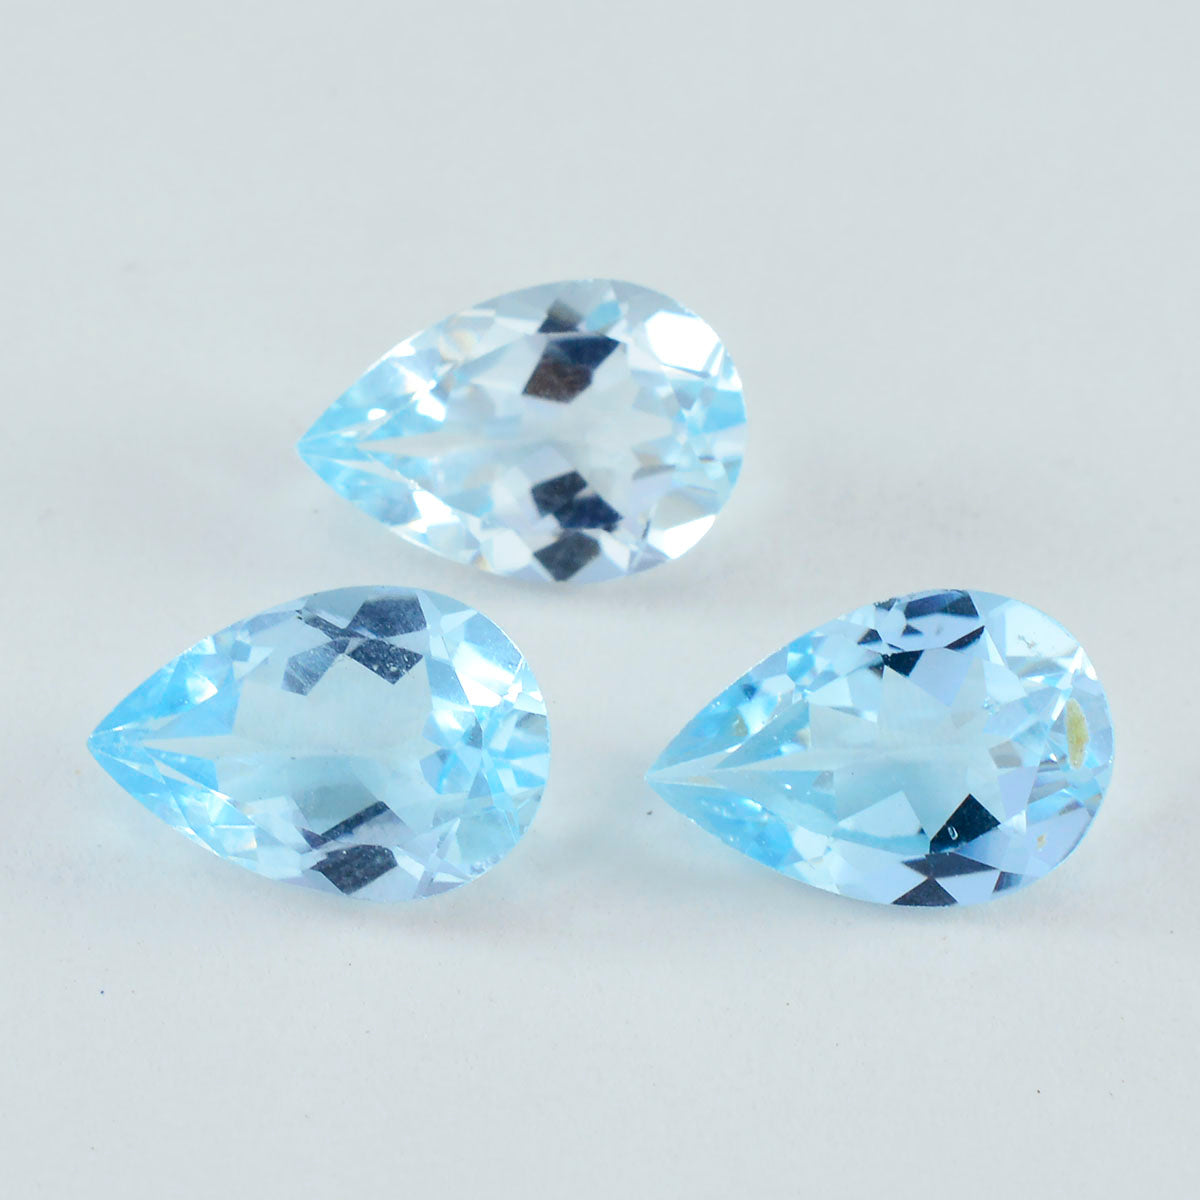 Riyogems 1 pieza de topacio azul real facetado 2x2 mm forma redonda piedra preciosa de calidad sorprendente